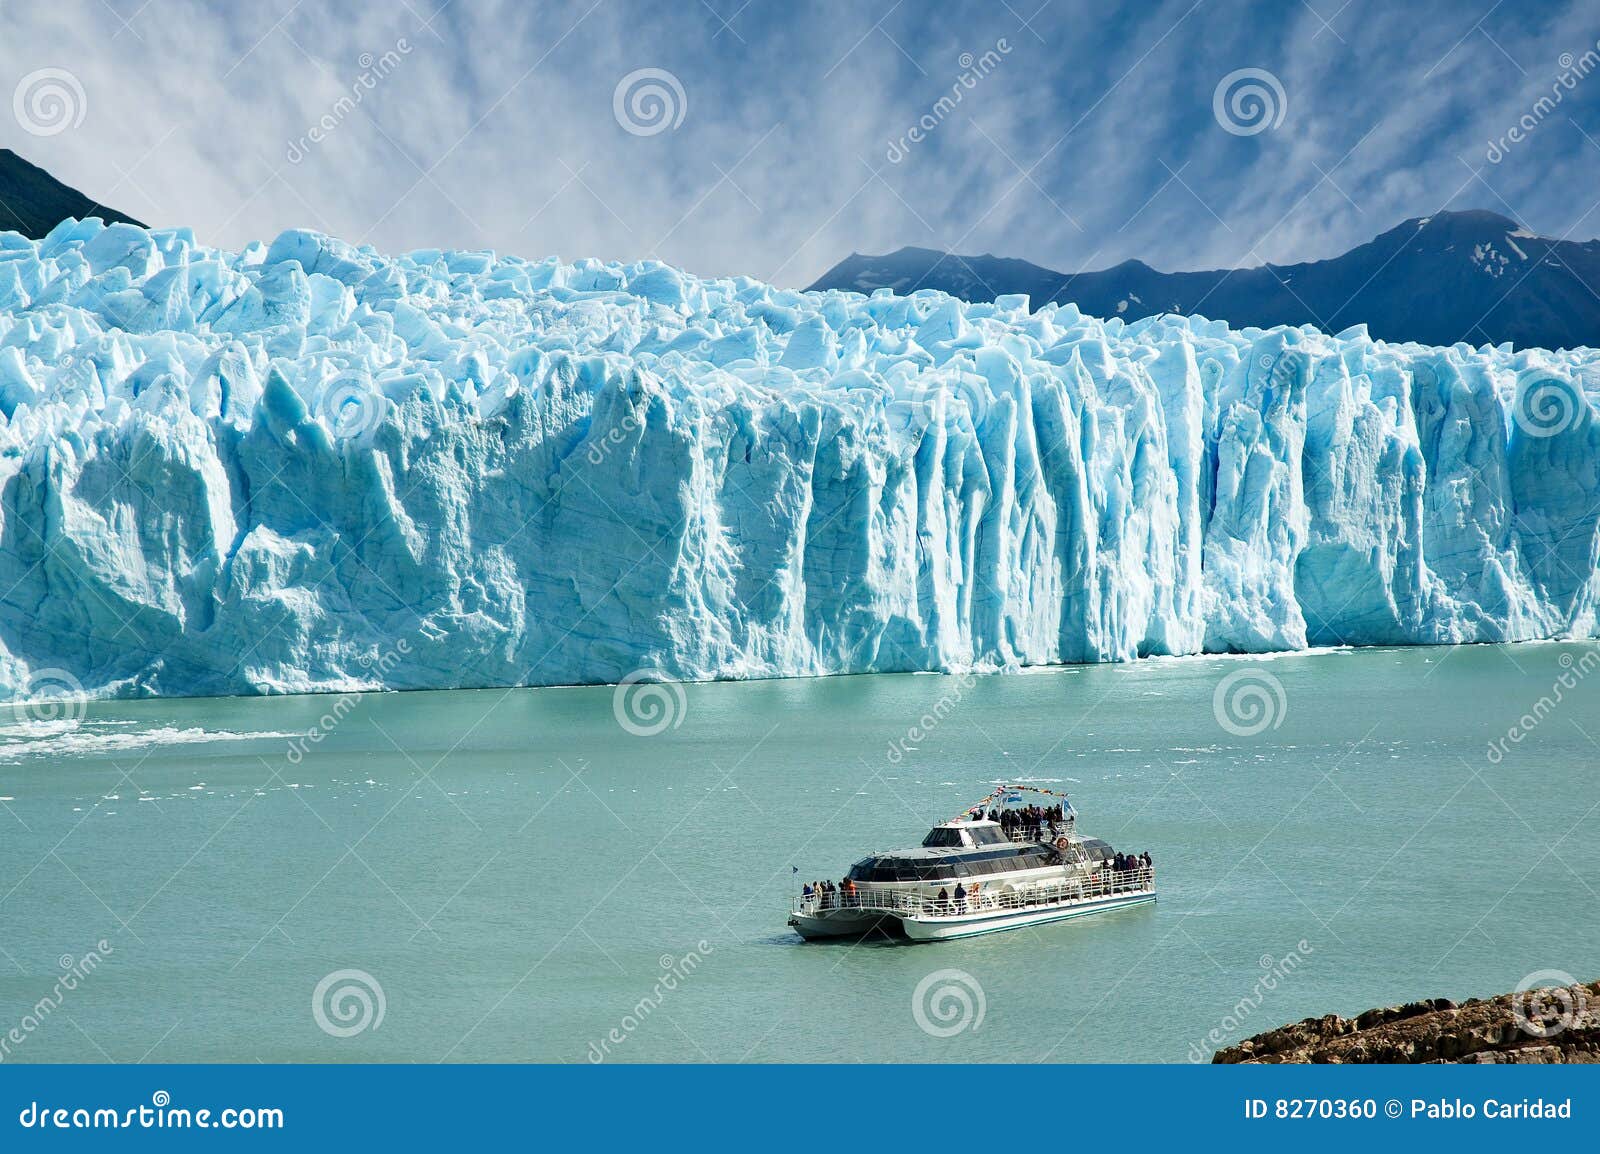 boat sailing near perito moreno glacier.